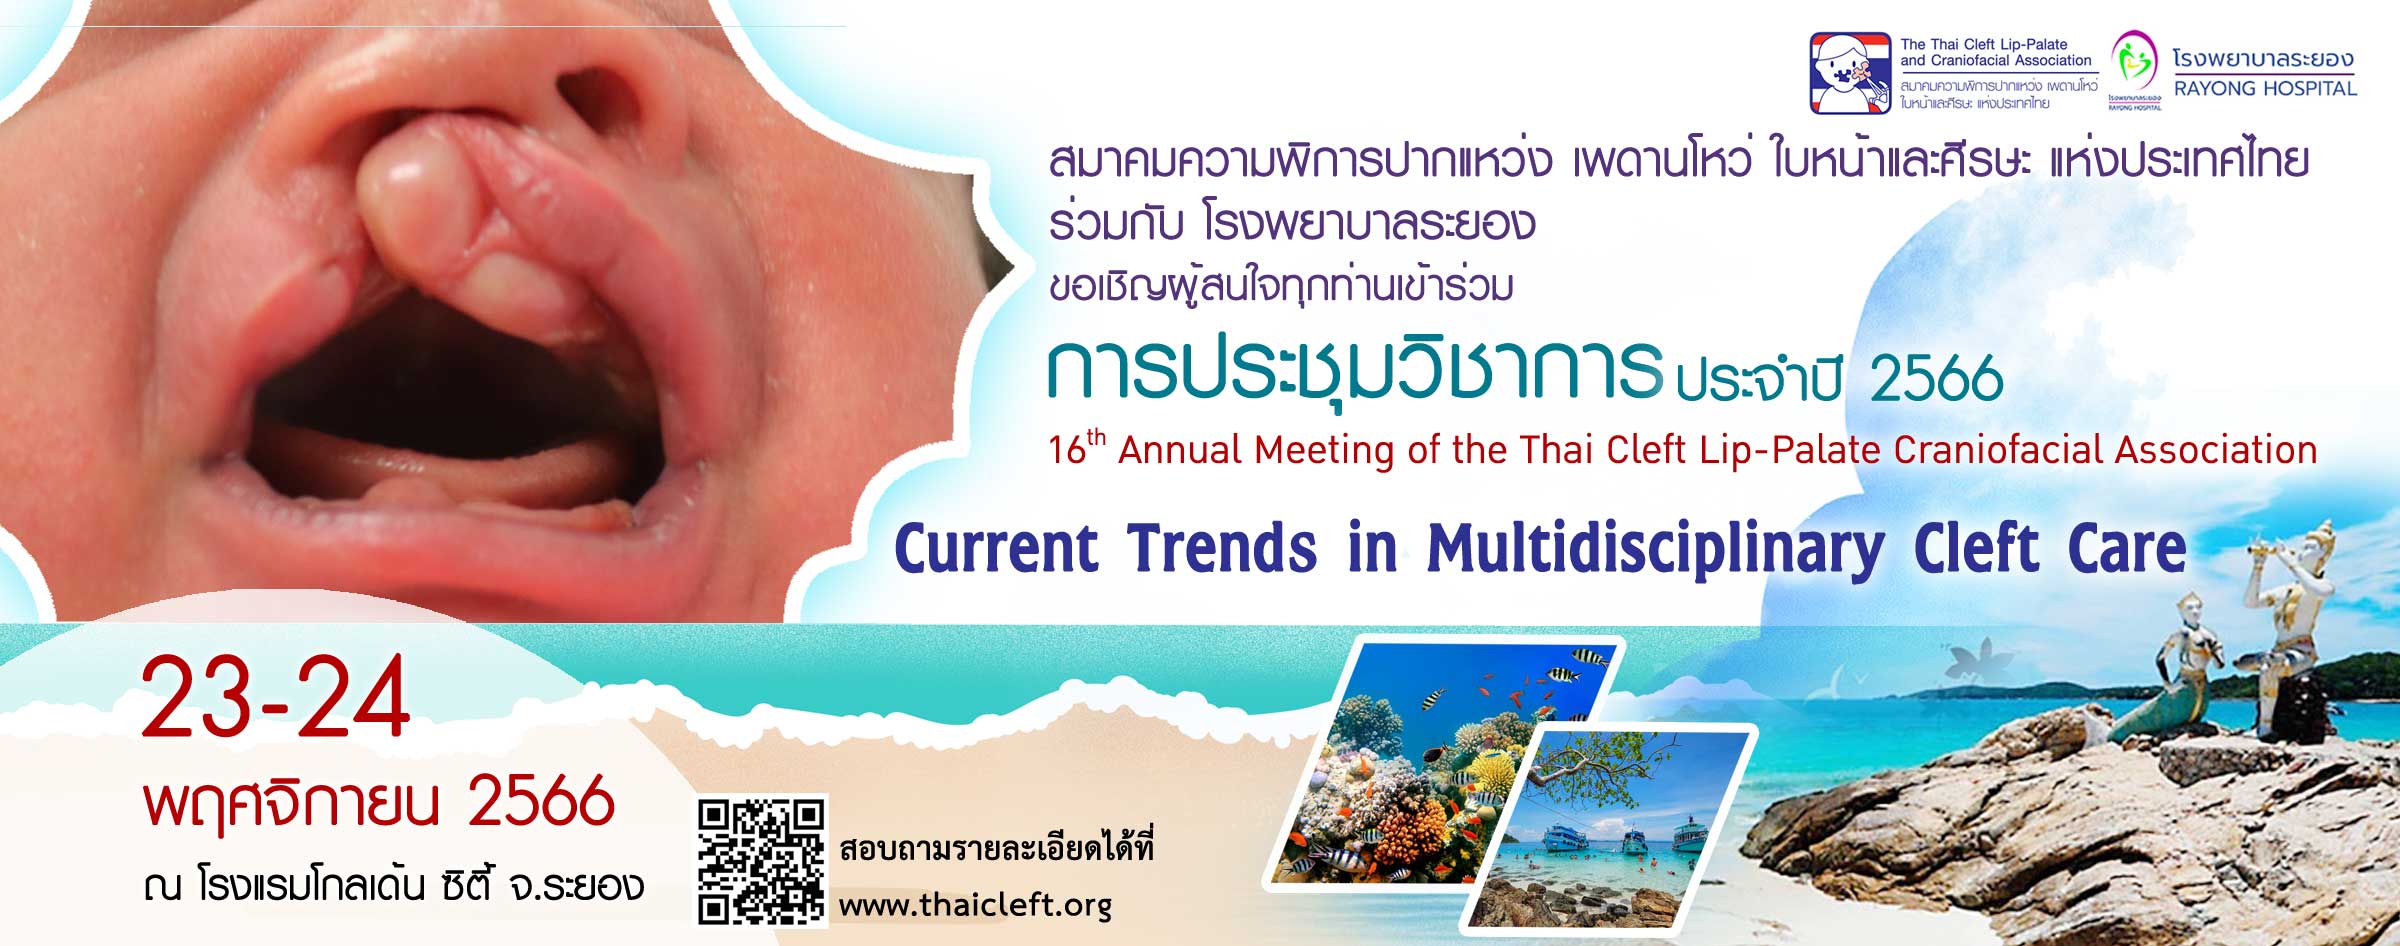 การประชุมวิชาการประจำปี 2566 ครั้งที่ 16 สมาคมความพิการปากแหว่ง เพดานโหว่ ใบหน้าและศีรษะ แห่งประเทศไทย